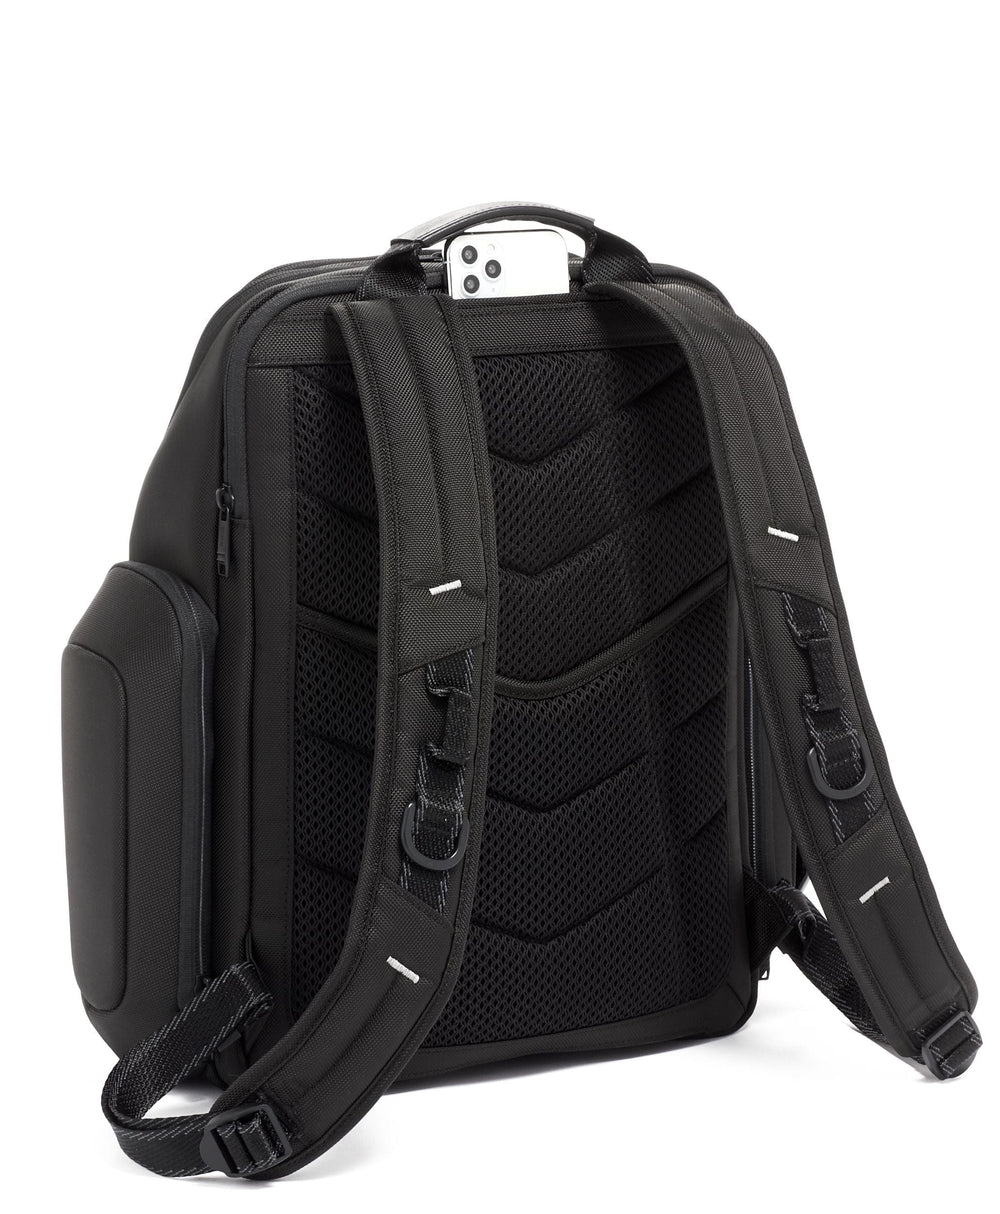 ESPORTS Pro Backpack